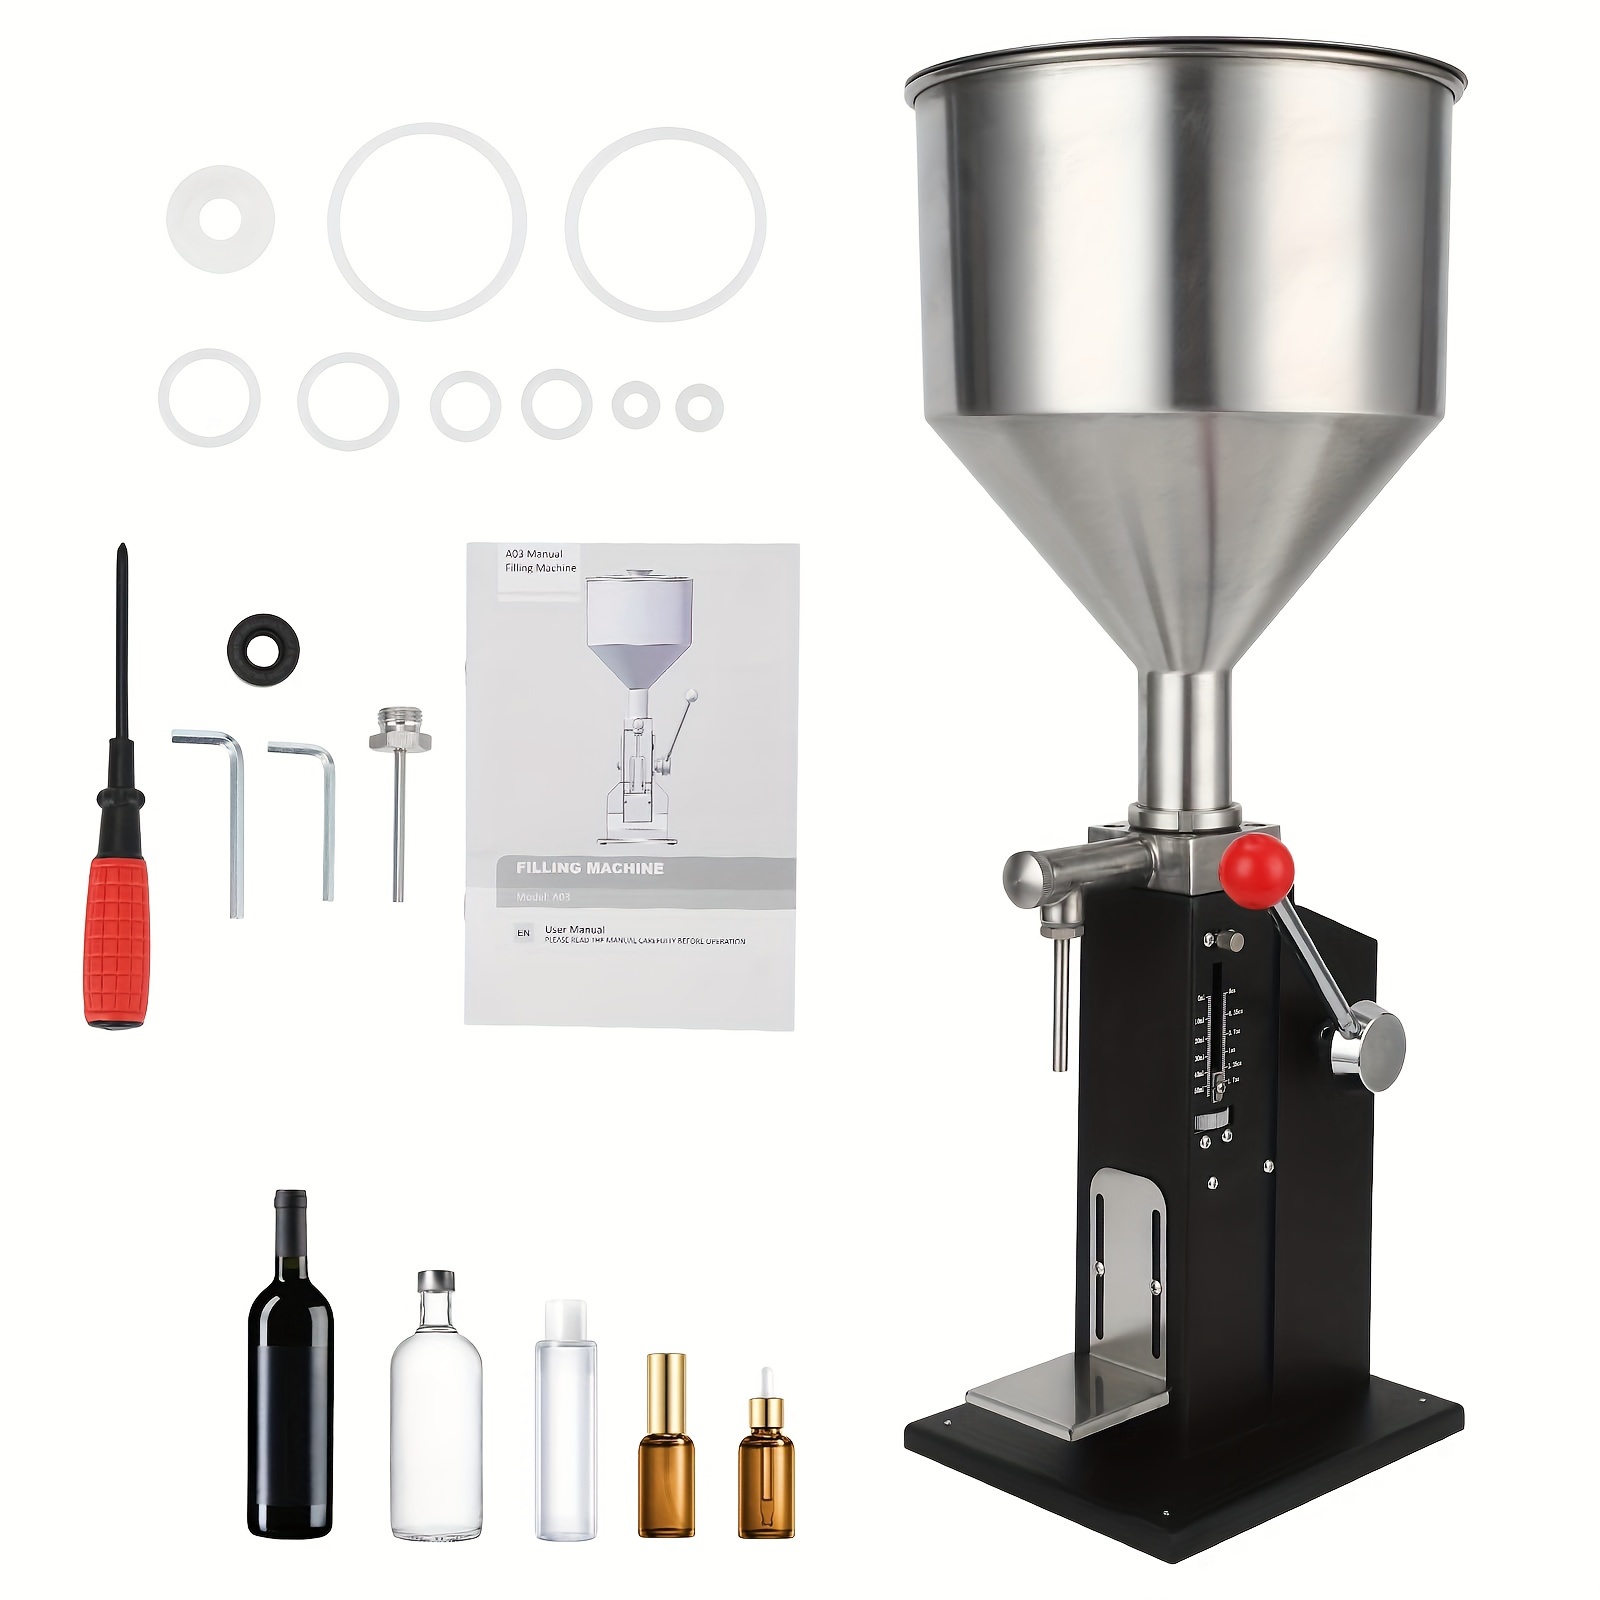 

Manual Paste Liquid Filling Machine - Adjustable 10-100ml Volume, Versatile For Cream/ Cosmetic/ Perfume/ Medicine/ Shampoo